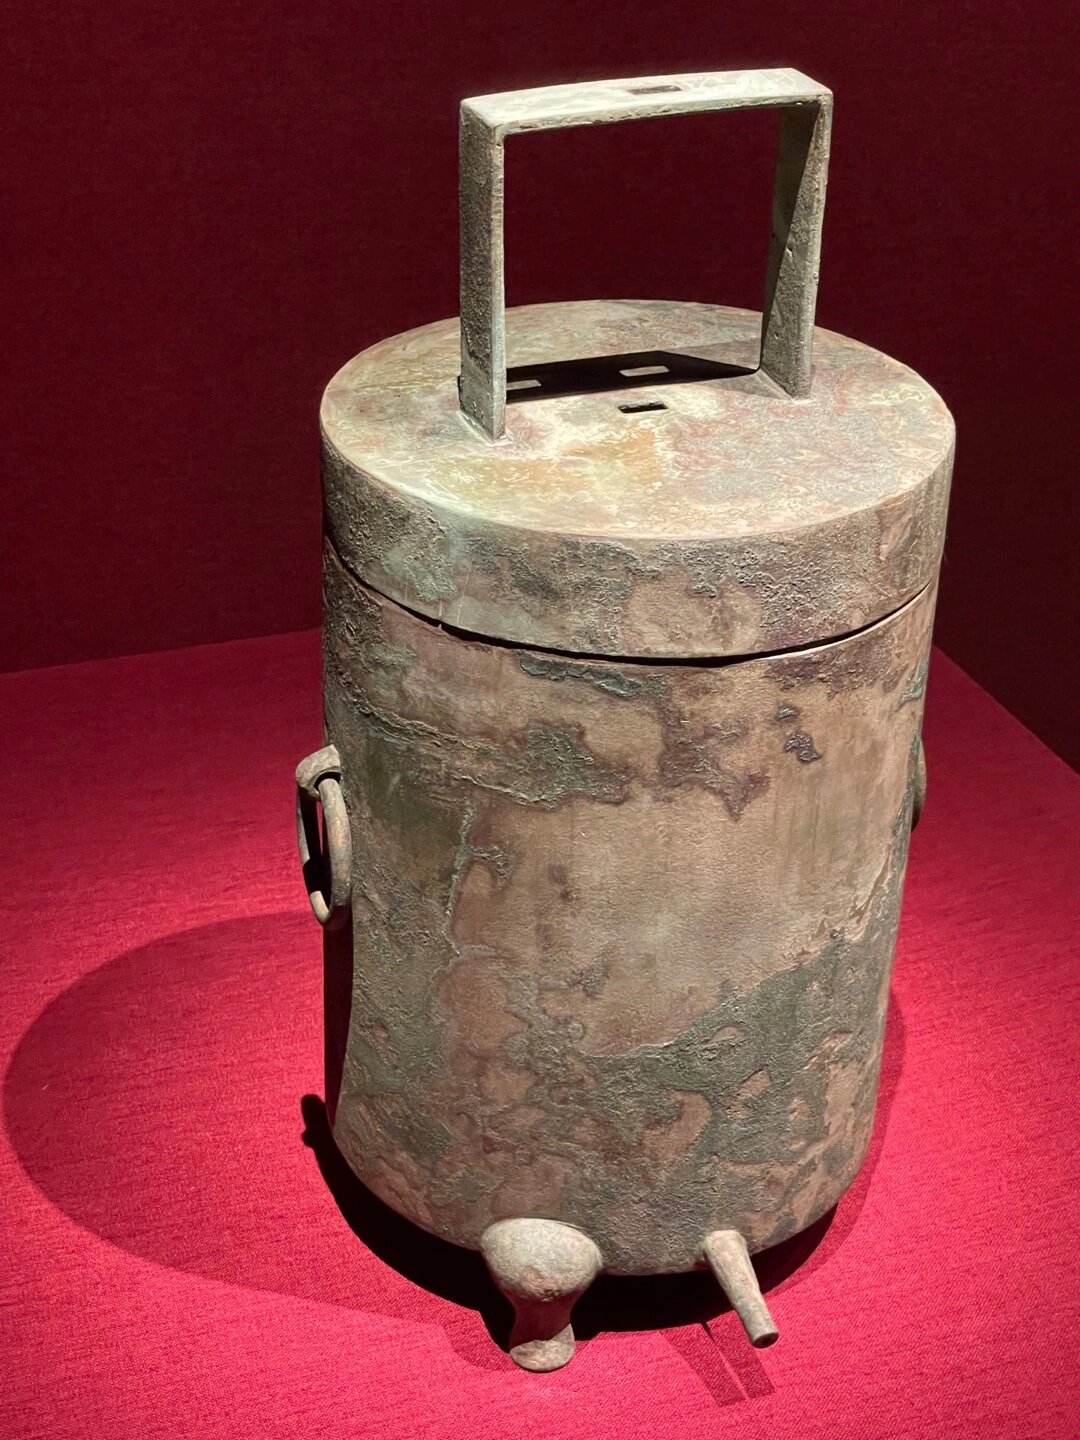 汉代青铜漏壶,中国古代的定时式计时用器,因出自厨具库,可能是烹饪用